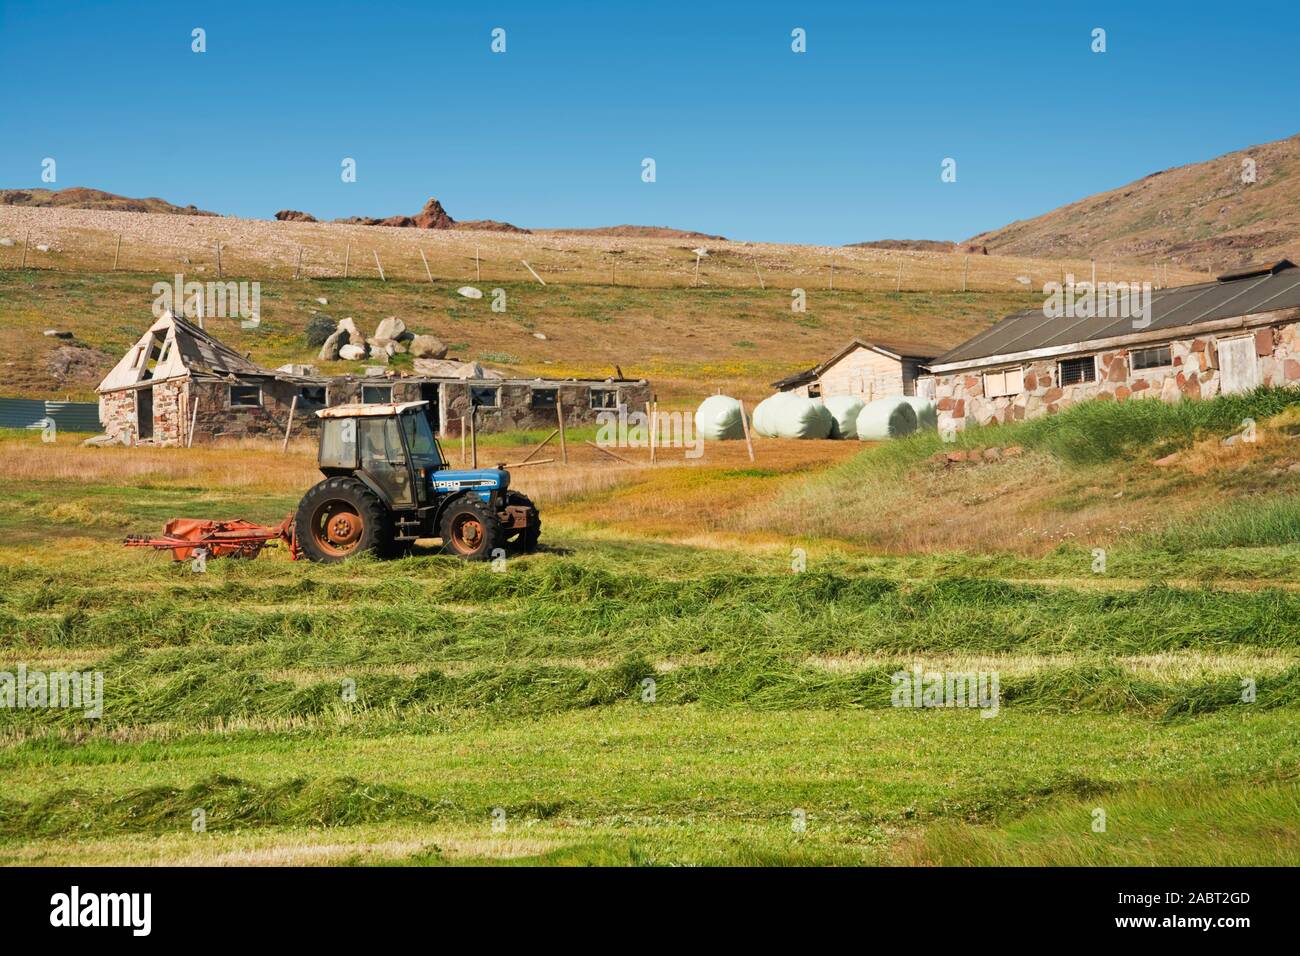 Europa, Süd West Grönland, kujalleq Kommune, Qassiarsuk, ländliche Landschaft mit Traktor Stockfoto